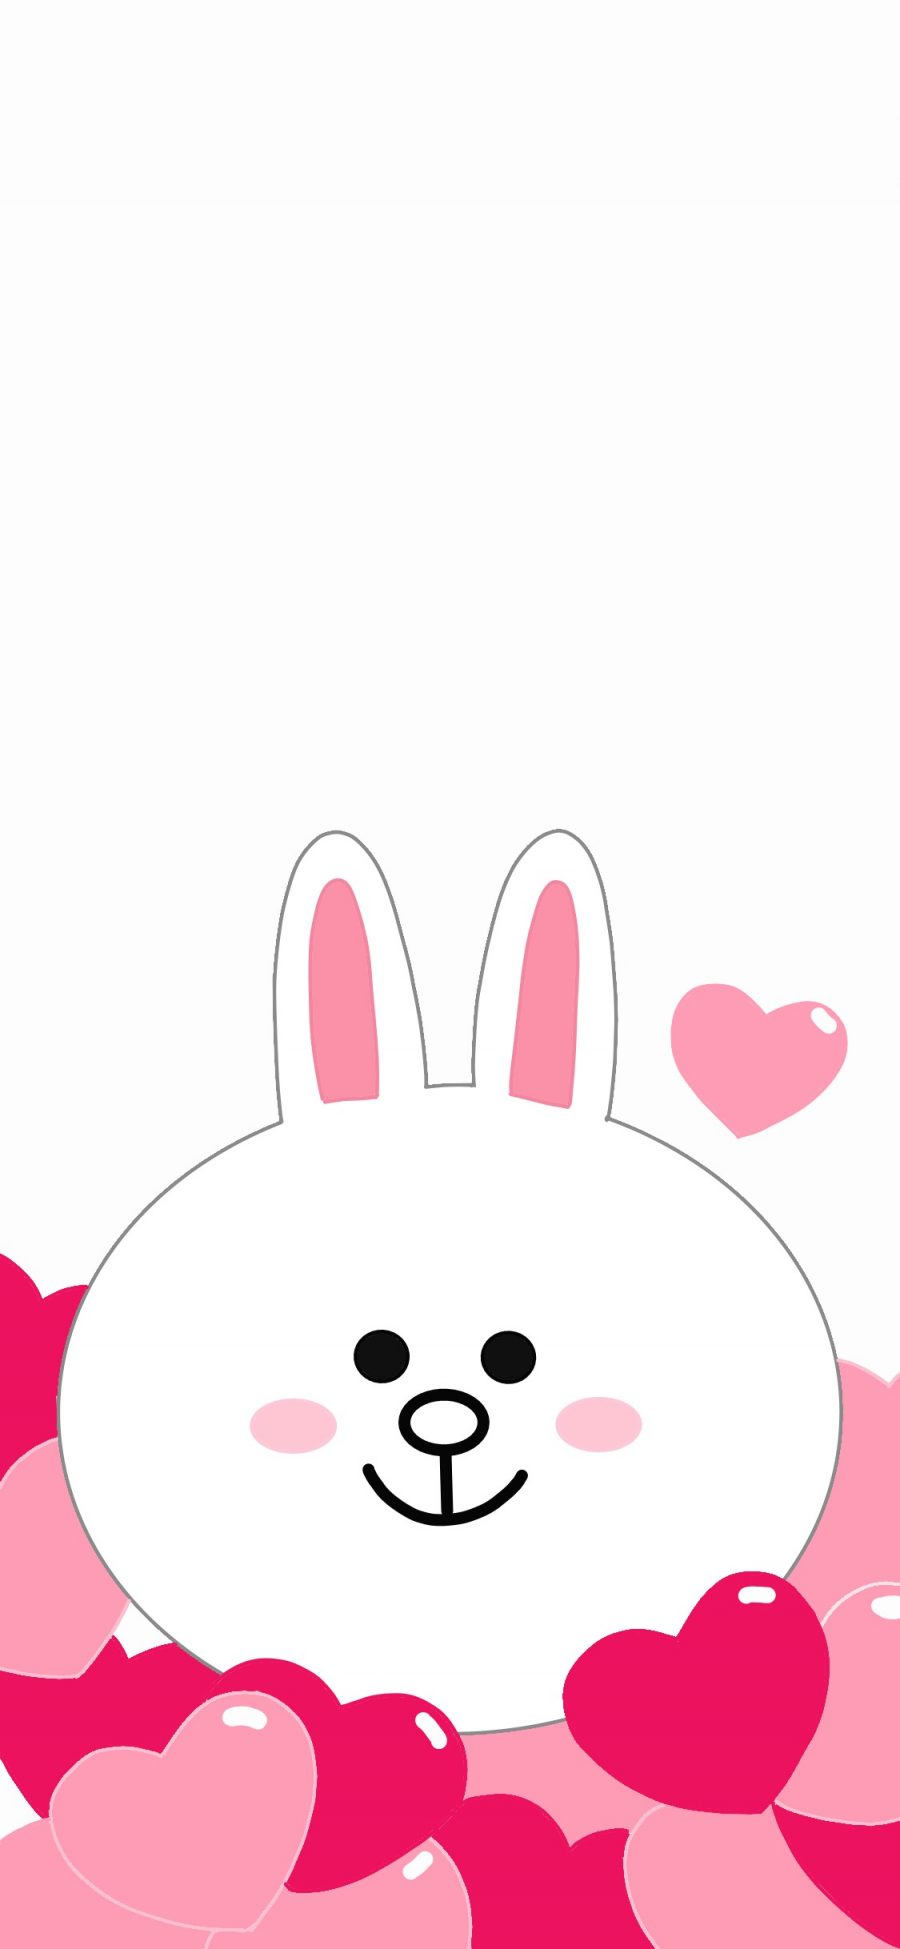 [2436×1125]可妮兔 linefriends 爱心 卡通 苹果手机动漫壁纸图片